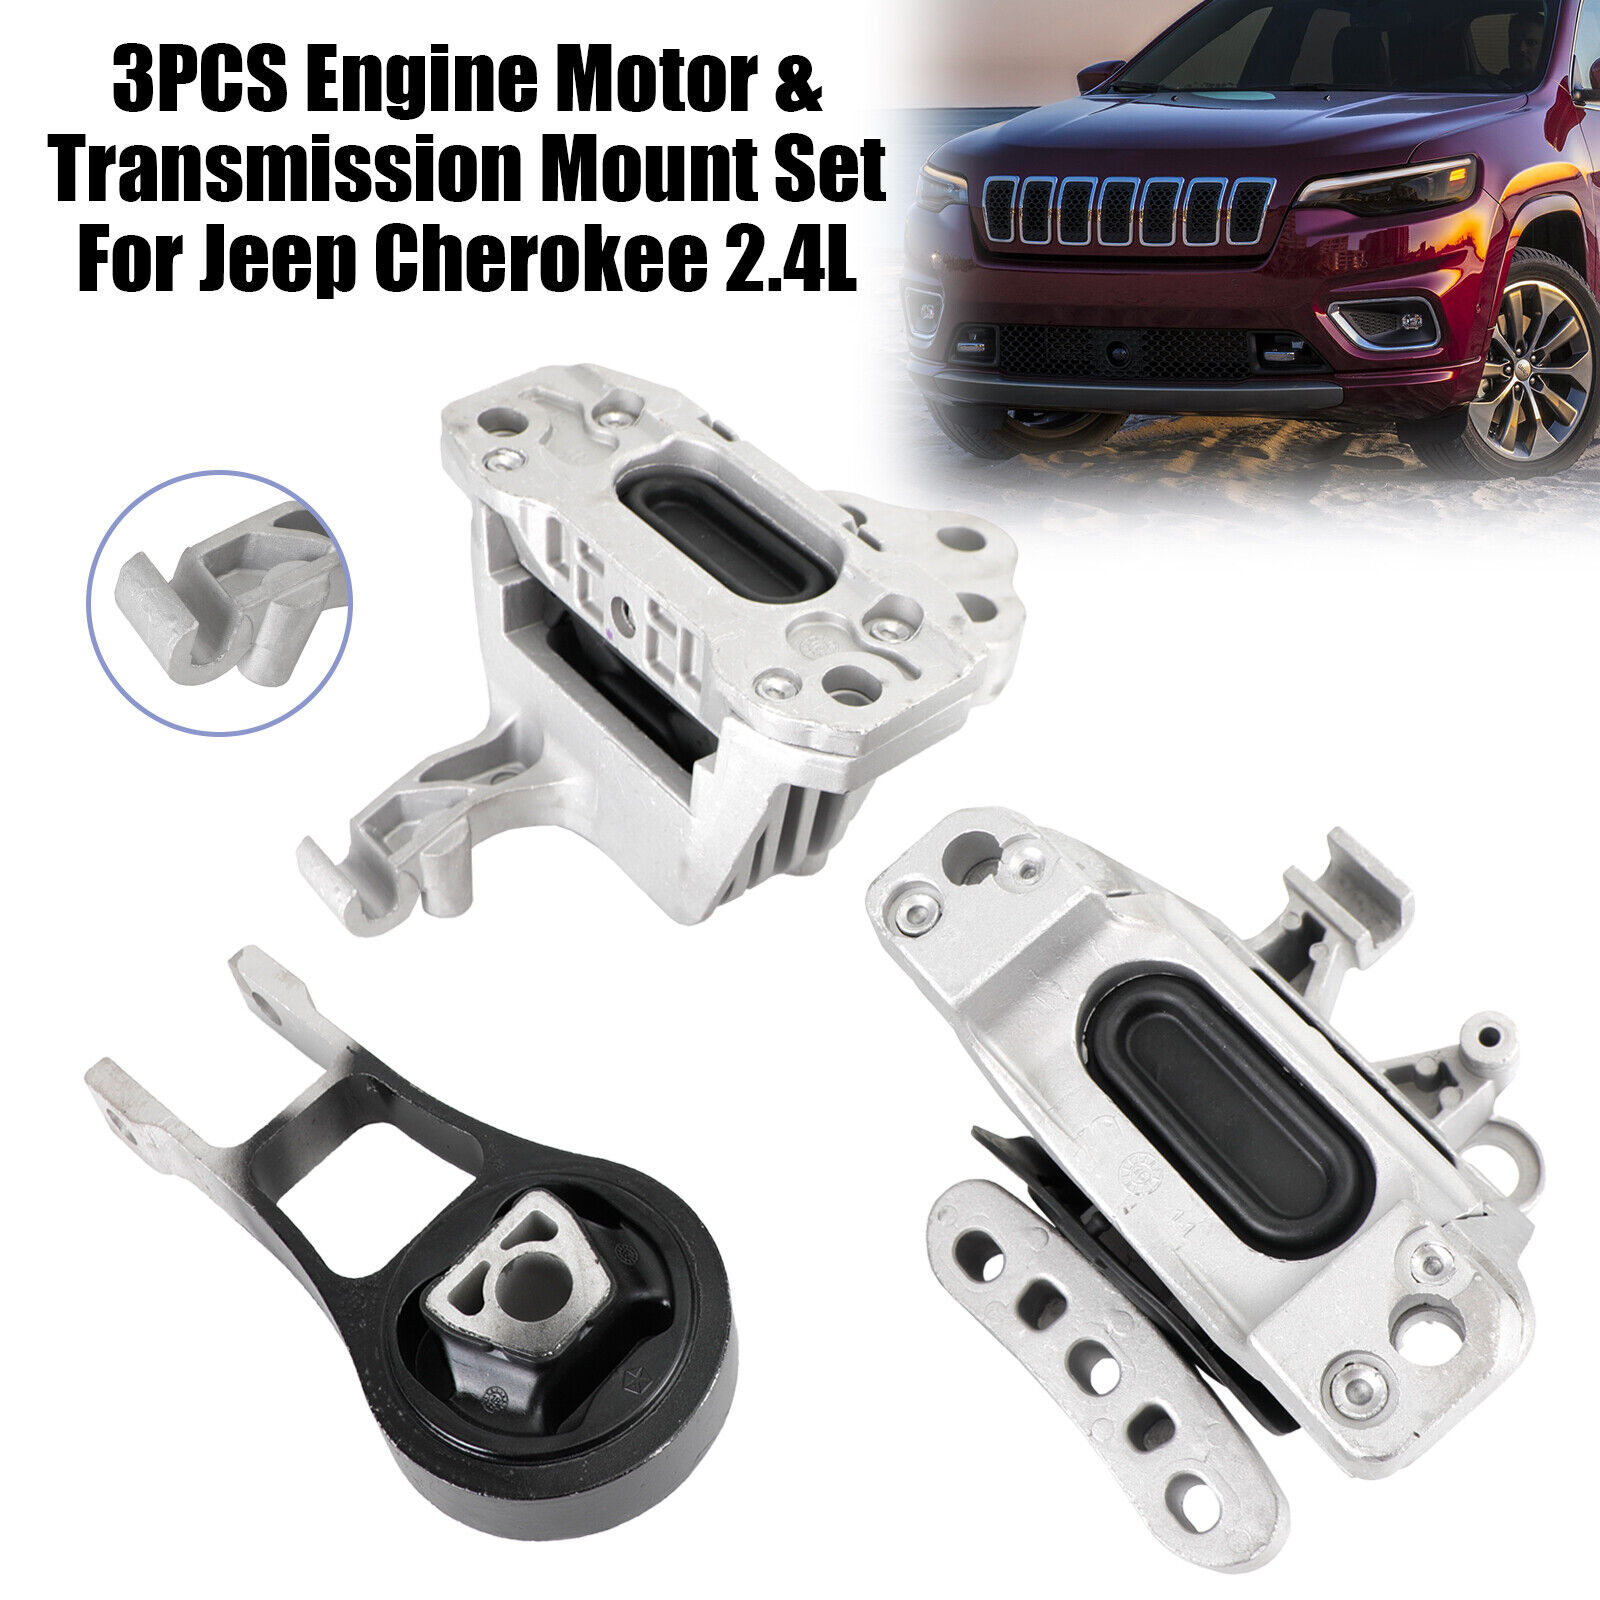 3PCS Engine Motor & Transmission Mount Set For Jeep Cherokee Chrysler 200 2.4L